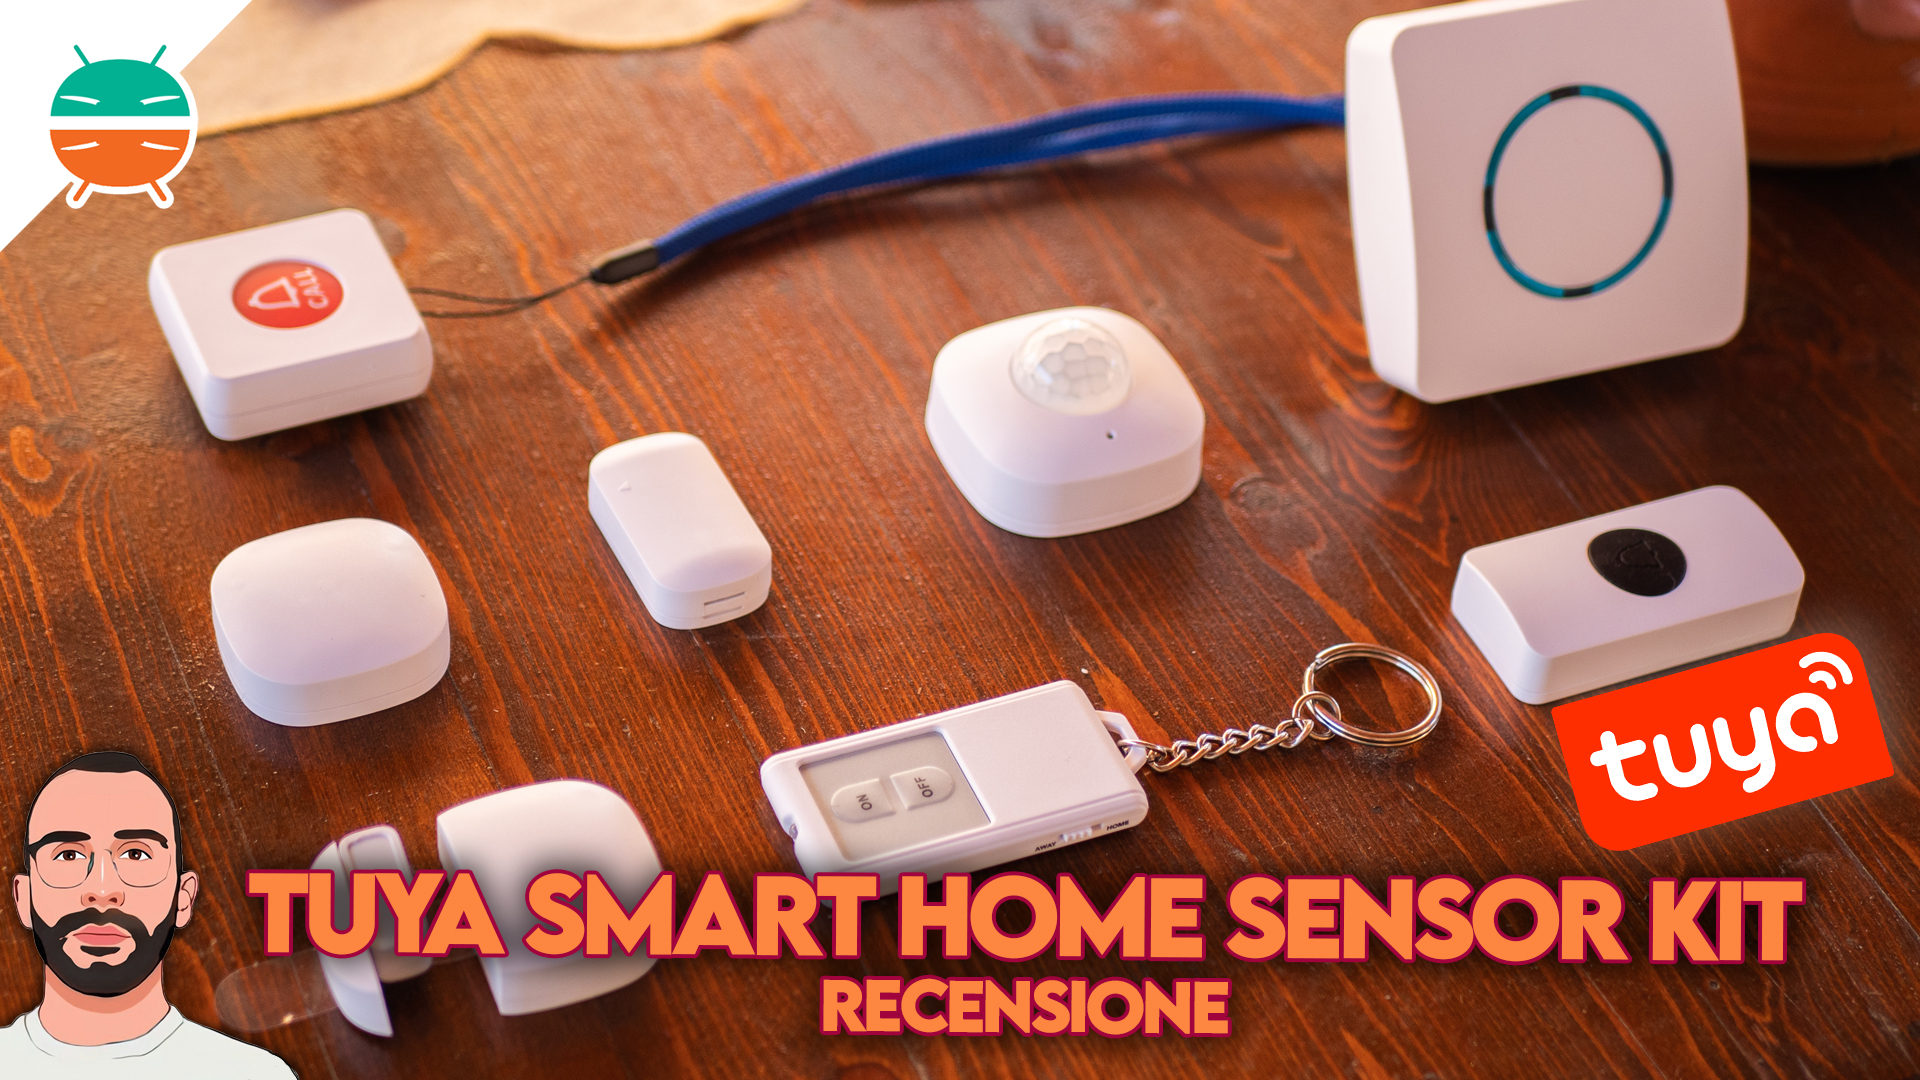 La smart home di Xiaomi invade l'Italia: ecco sensori per la casa, bilance  e asciugacapelli connessi